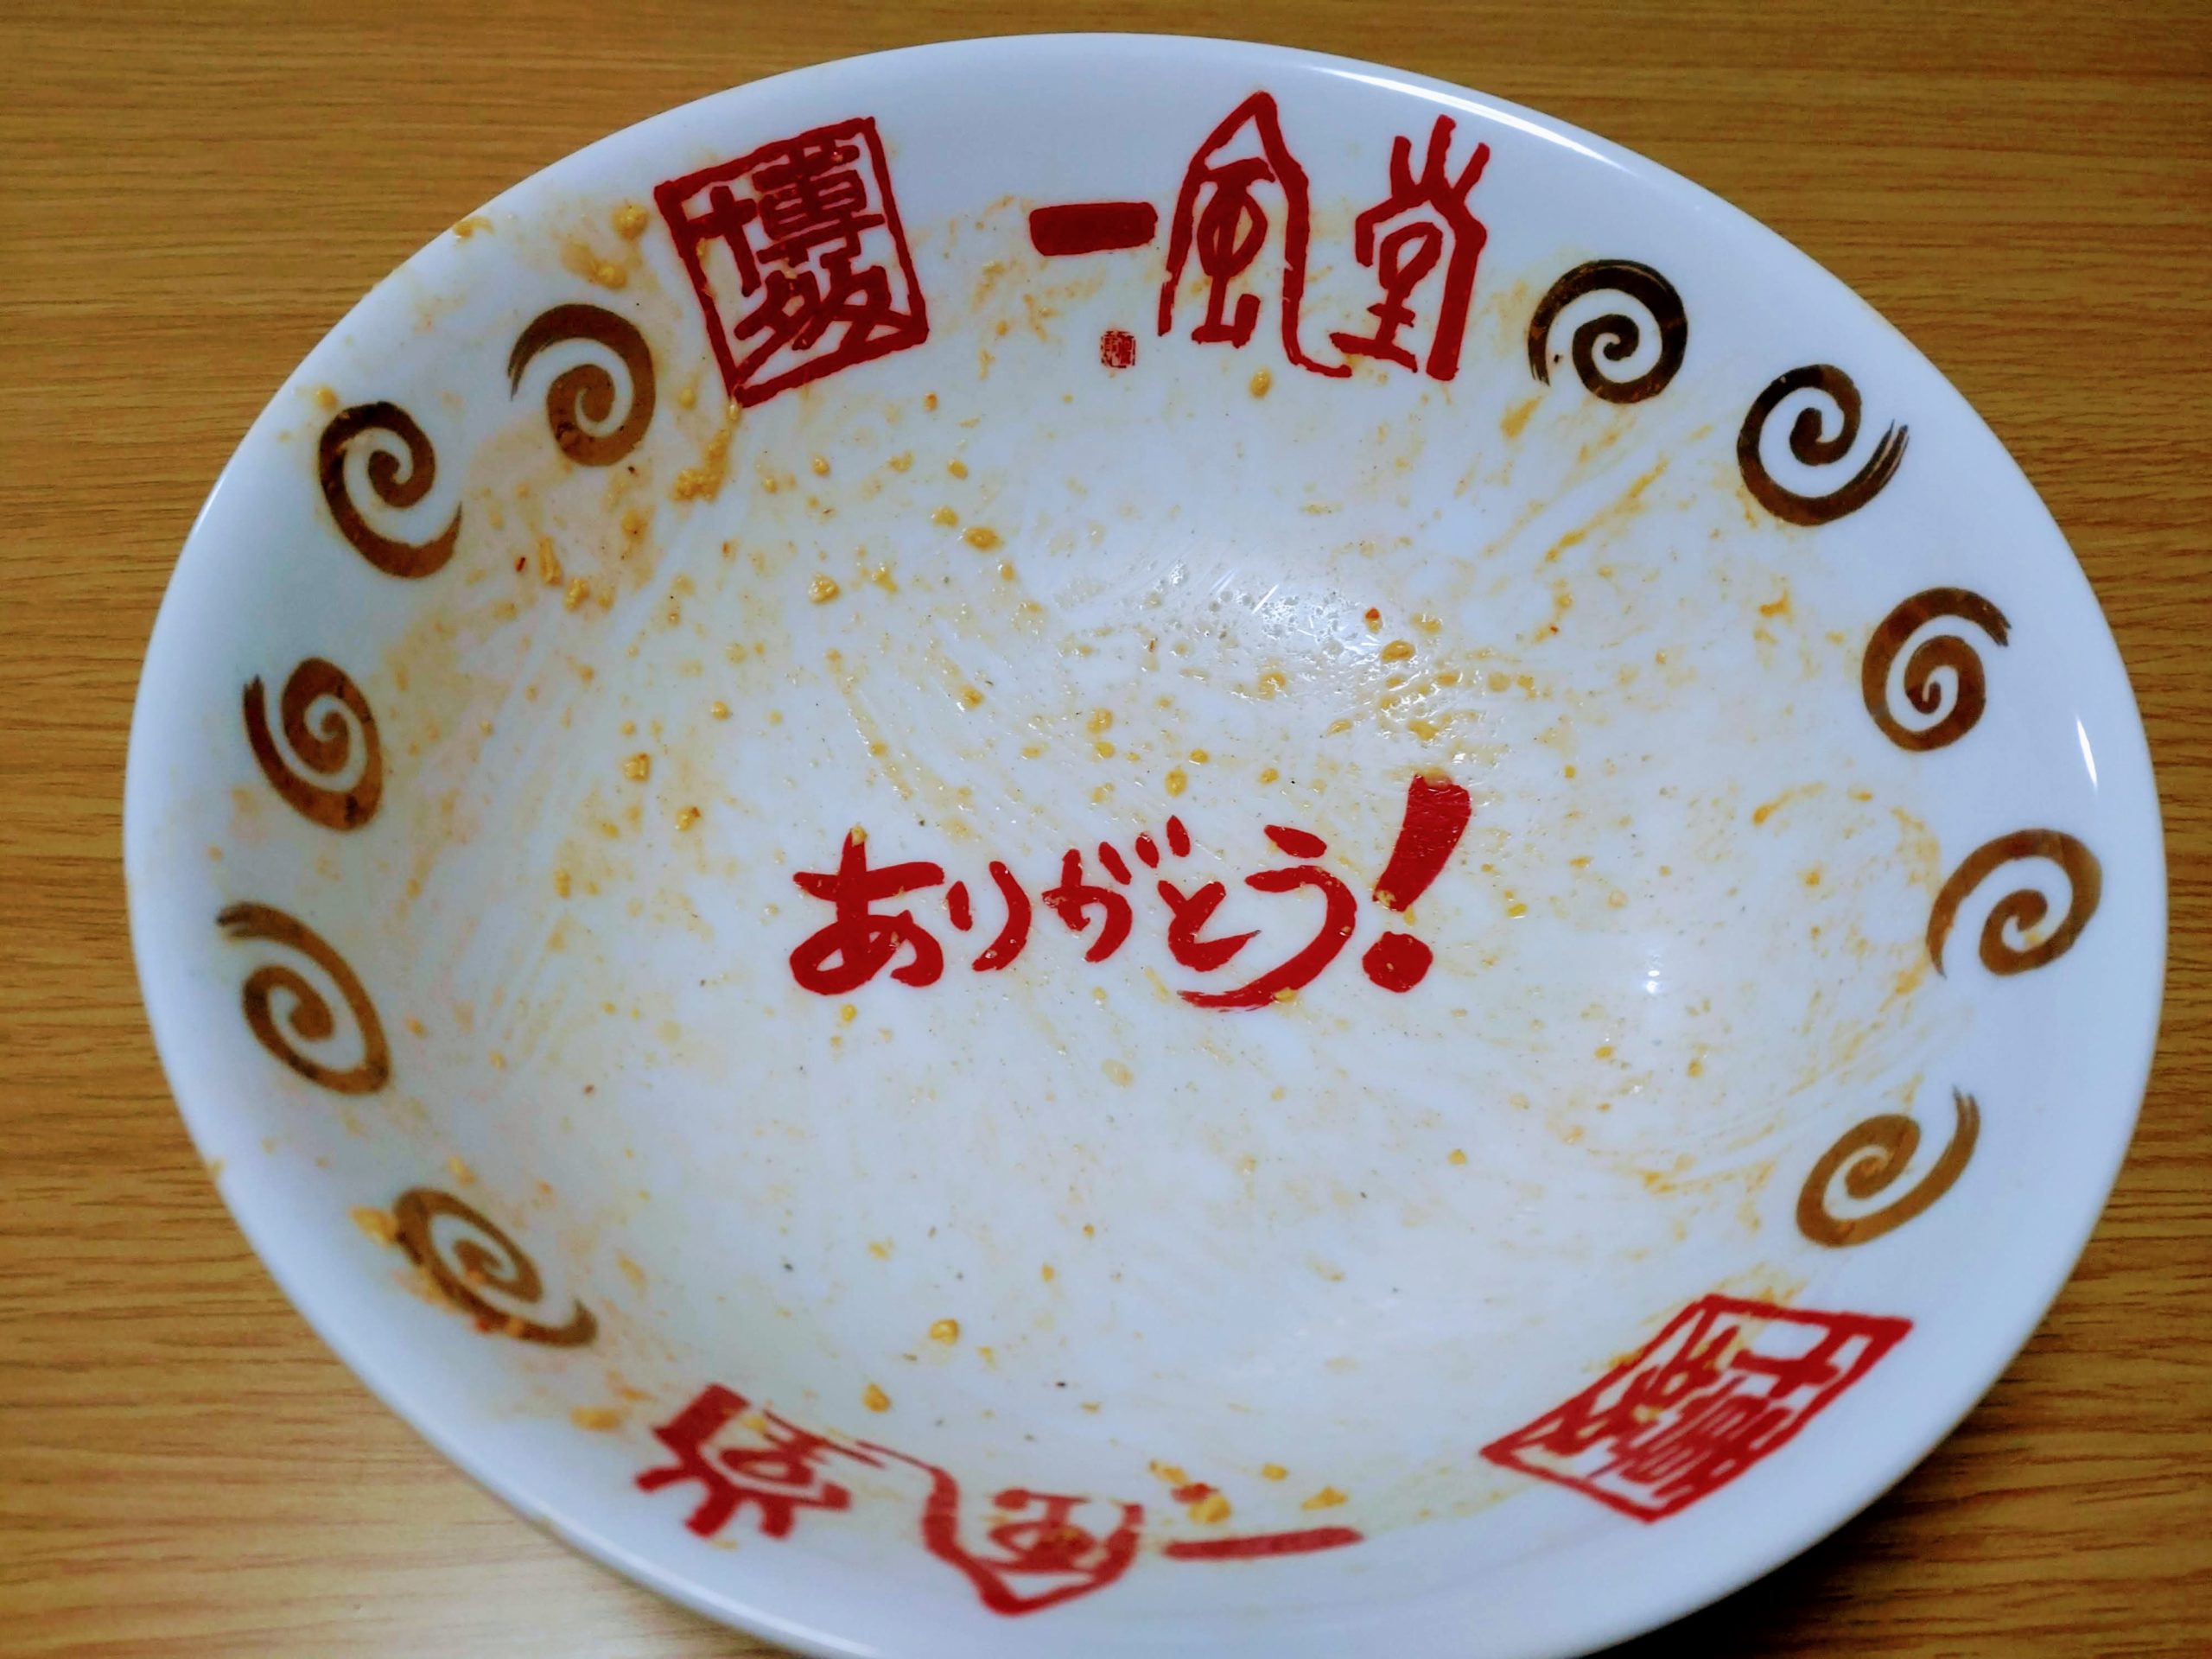 明星 チャルメラ 宮崎辛麺を完食